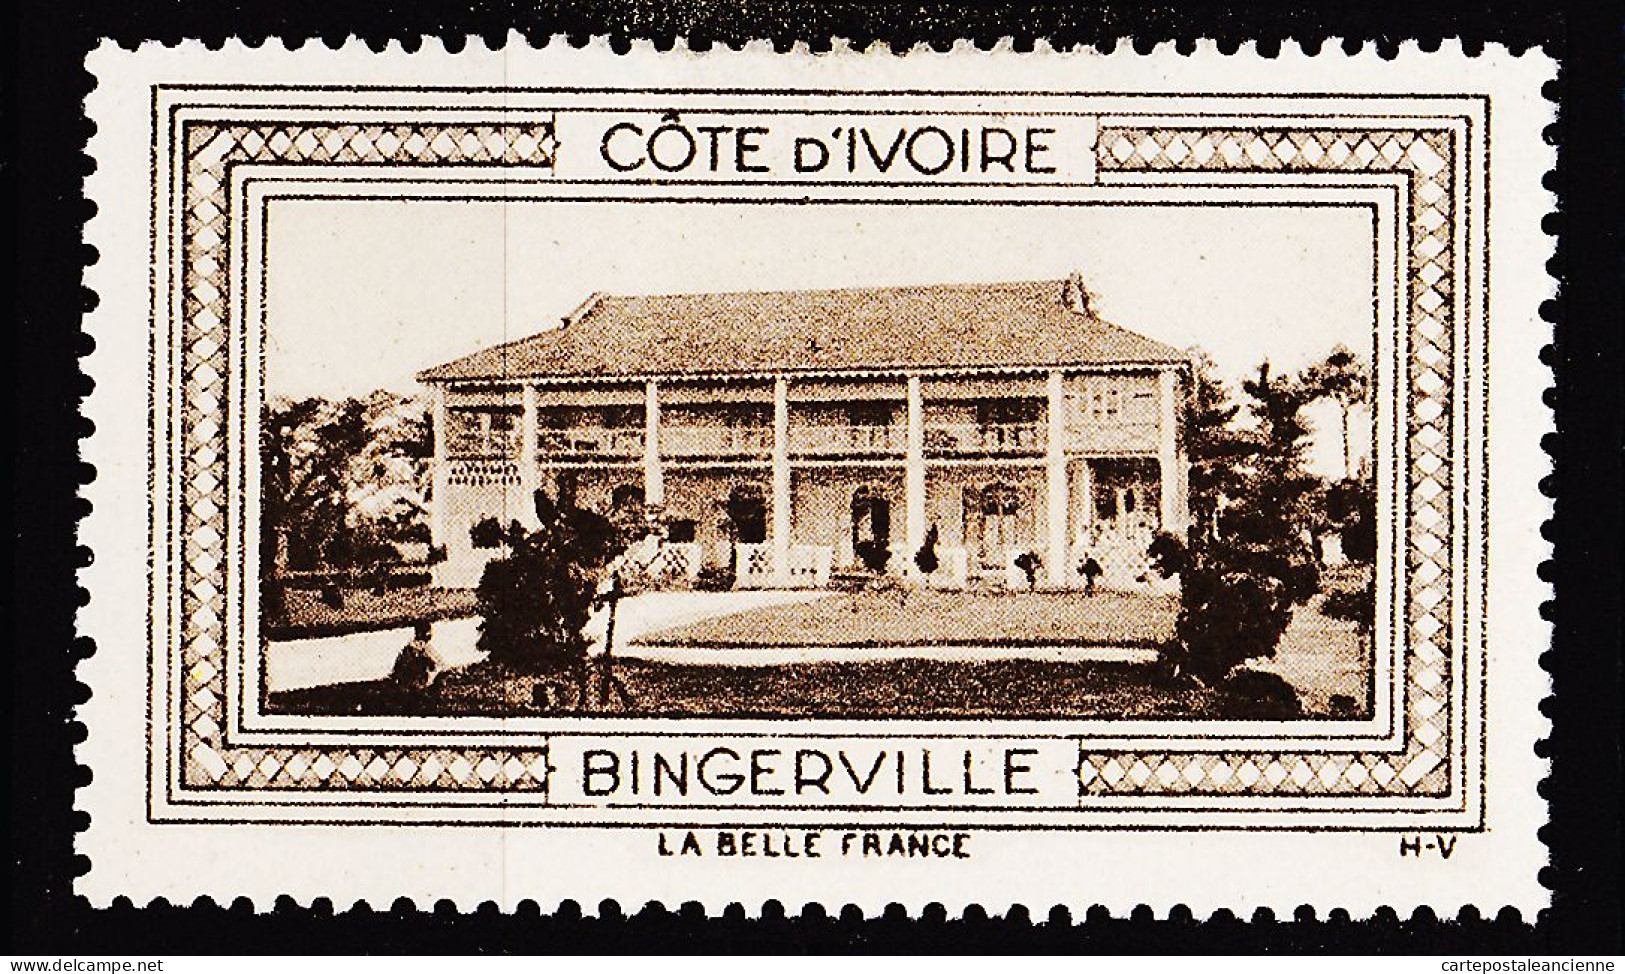 12944 ● BINGERVILLE COTE D'IVOIRE Vignette De Collection LA BELLE FRANCE 1925s H-V Erinnophilie - Tourism (Labels)